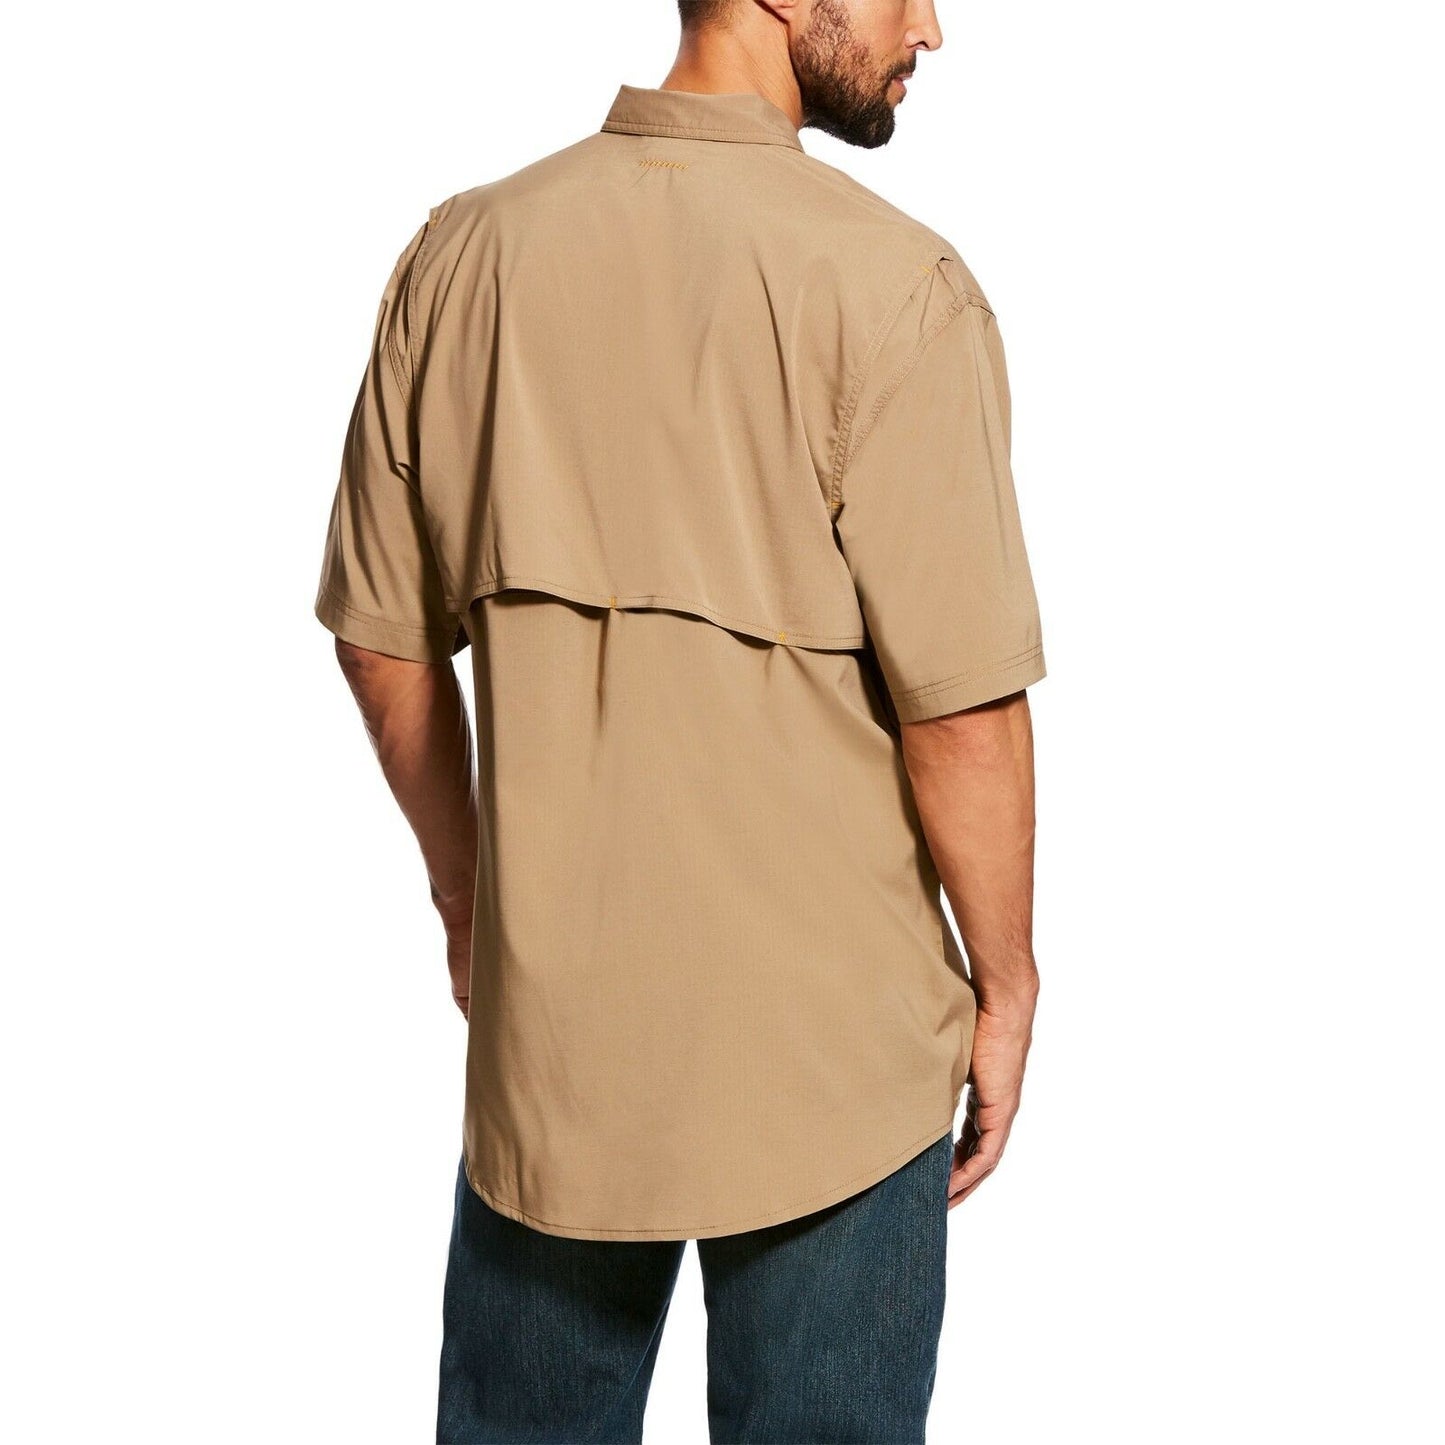 Ariat® Men's Rebar Made Tough VentTEK Short Sleeve Work Shirt 10025384